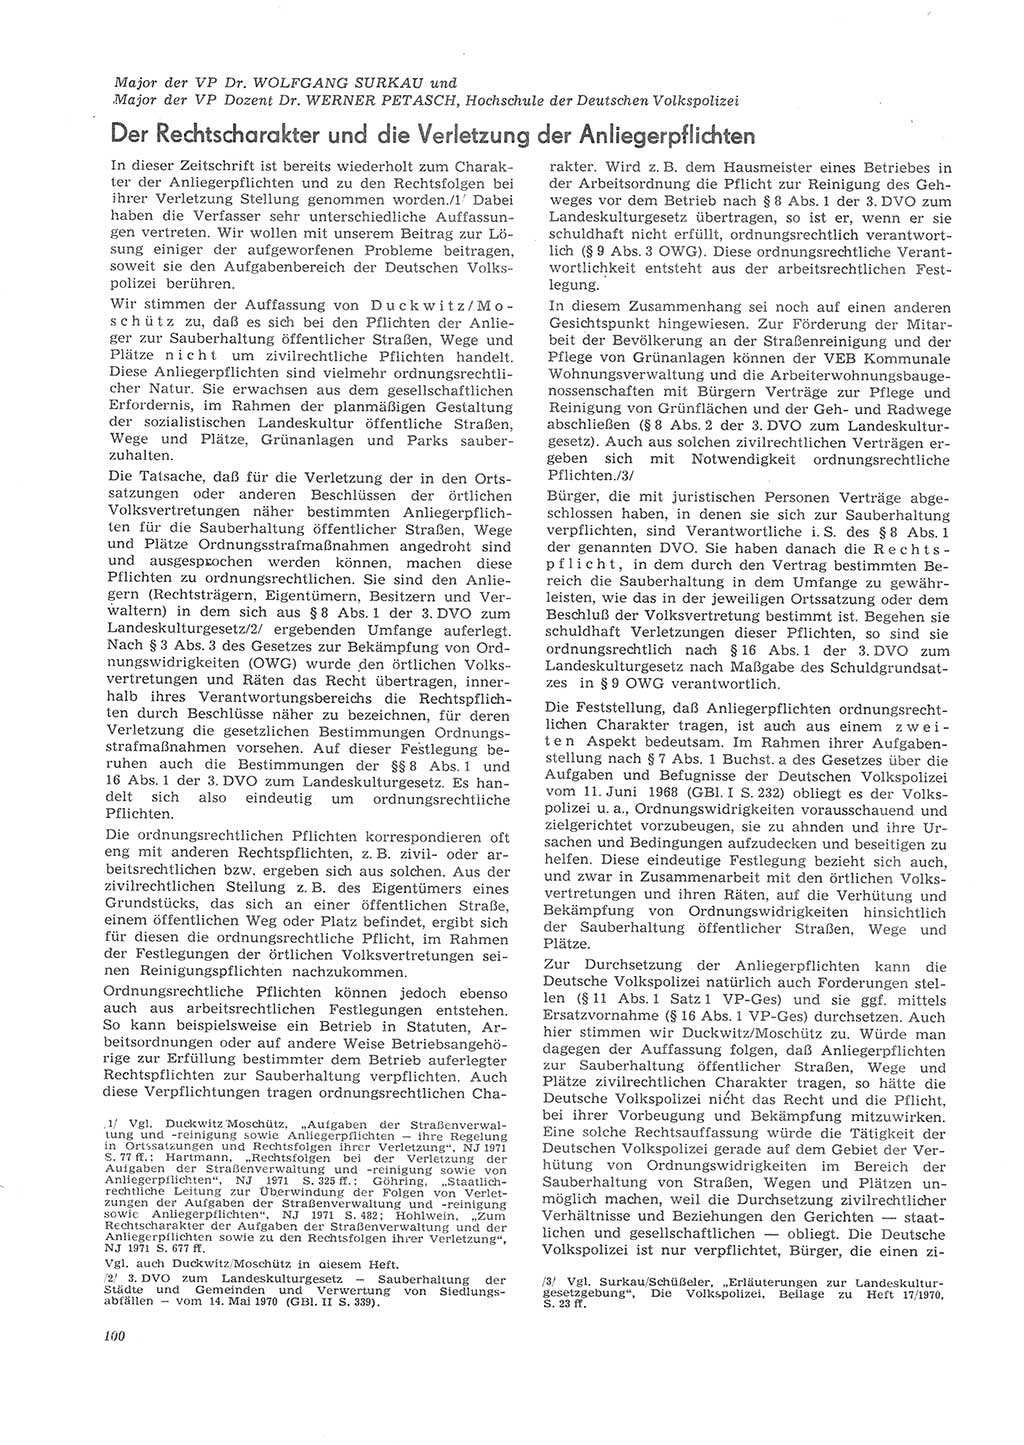 Neue Justiz (NJ), Zeitschrift für Recht und Rechtswissenschaft [Deutsche Demokratische Republik (DDR)], 26. Jahrgang 1972, Seite 100 (NJ DDR 1972, S. 100)